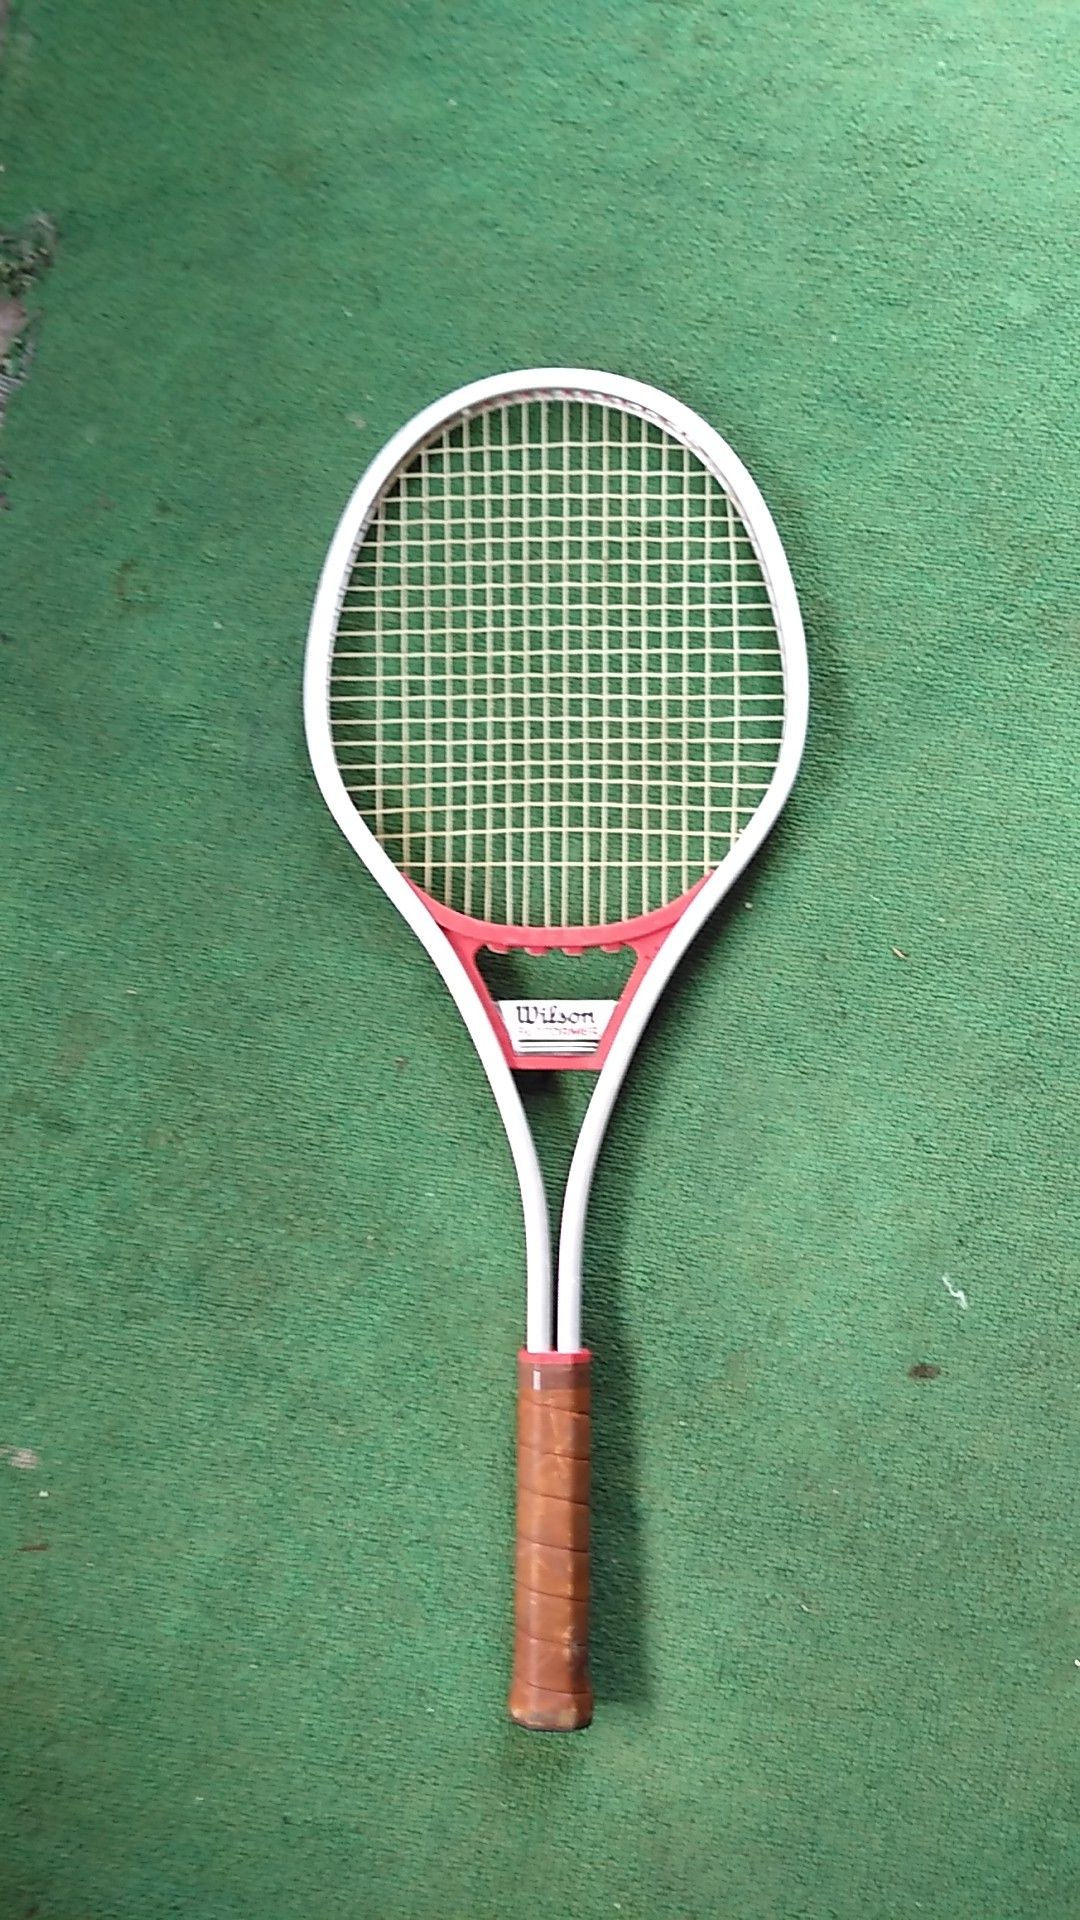 Wilson performer tennis racket